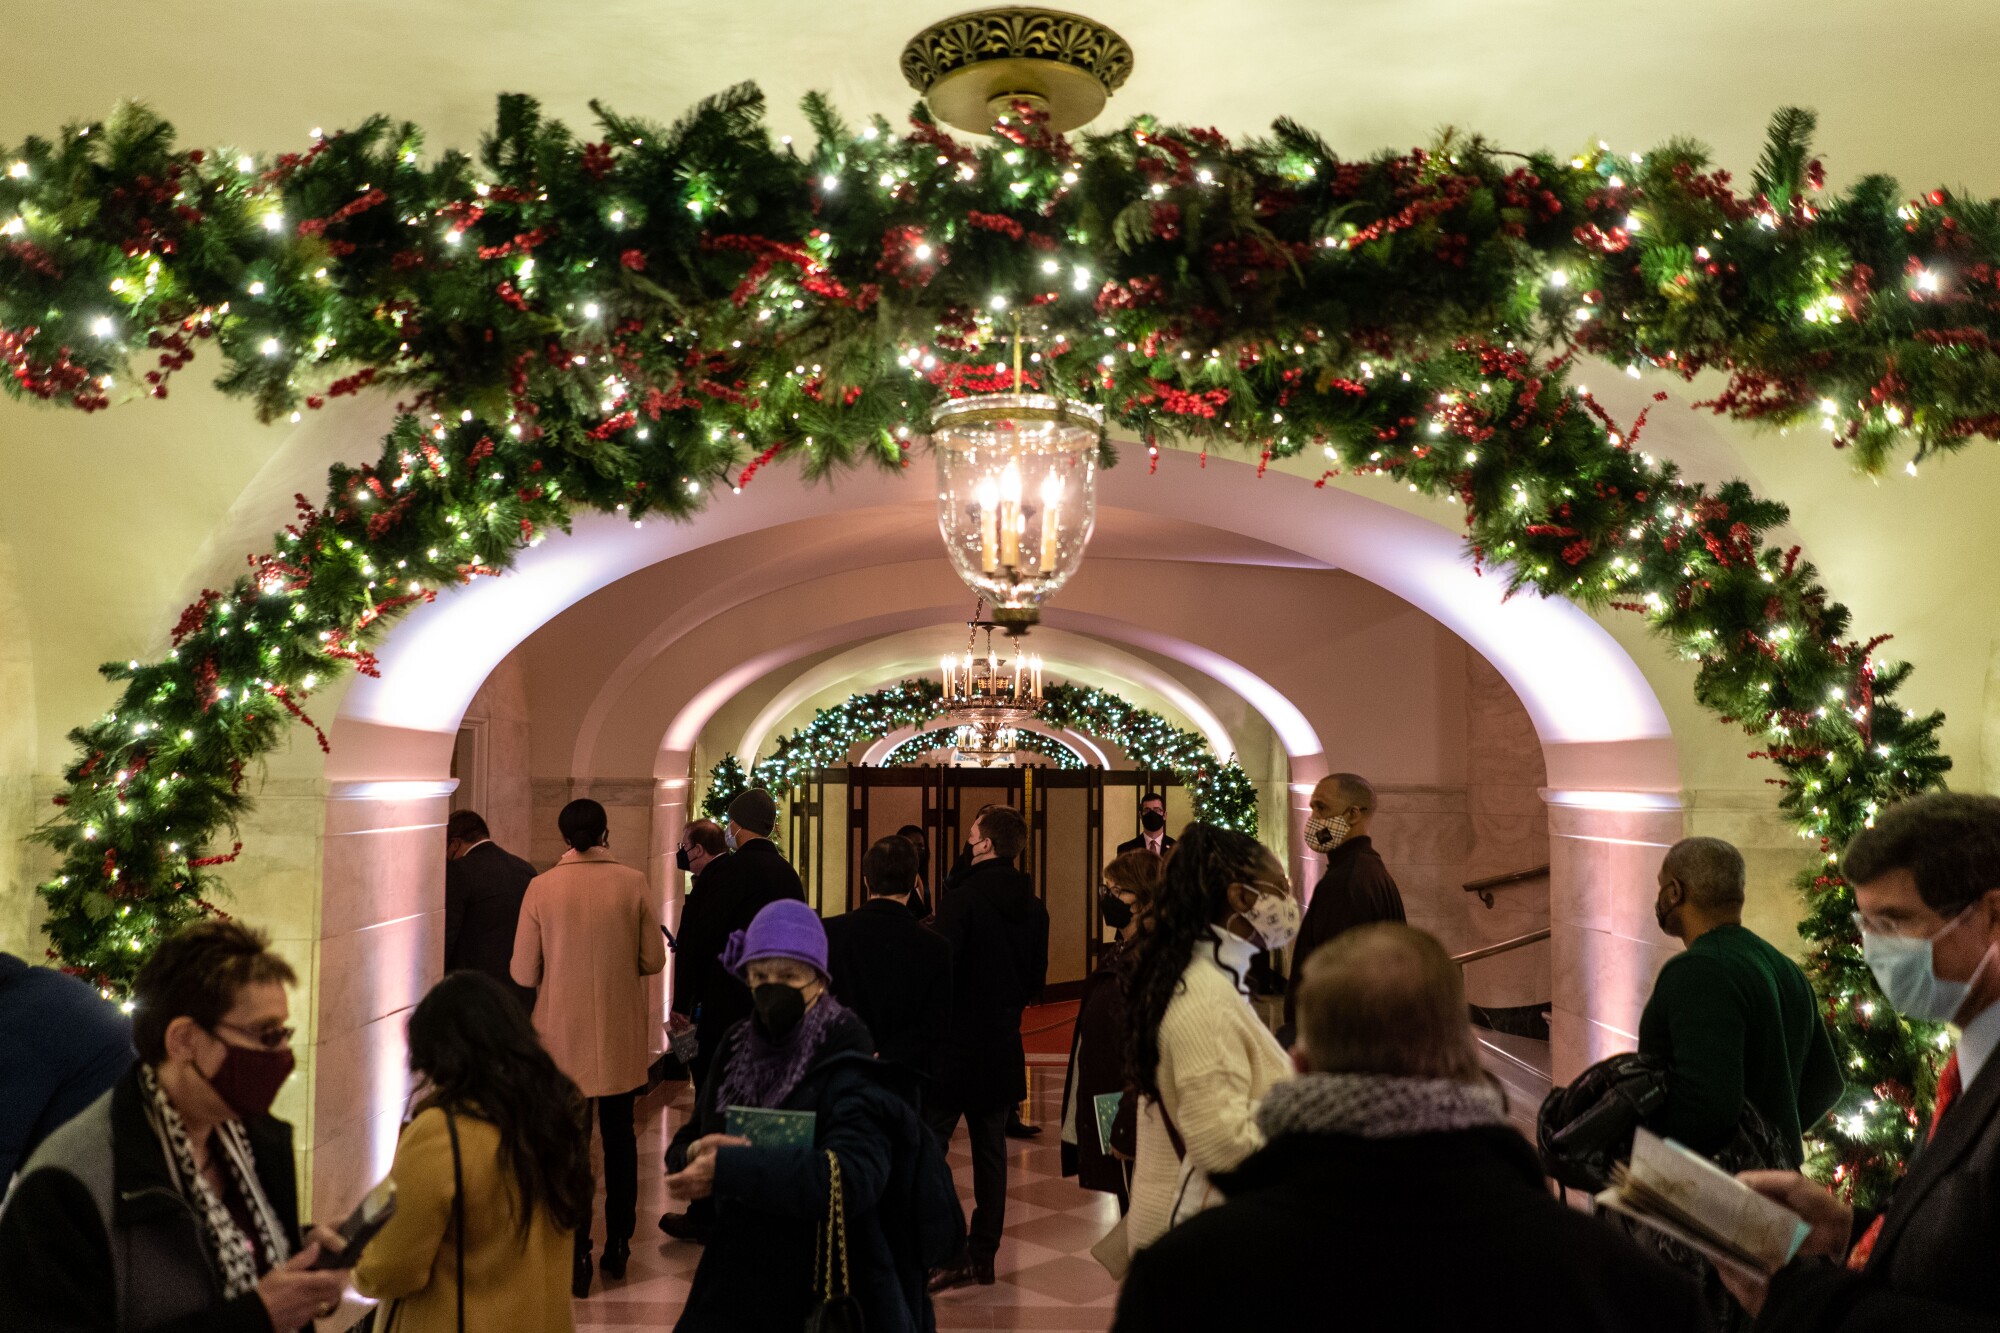 اعضای مردم در طول یک تور کریسمس در سالن مرکزی کاخ سفید پرسه می زنند.